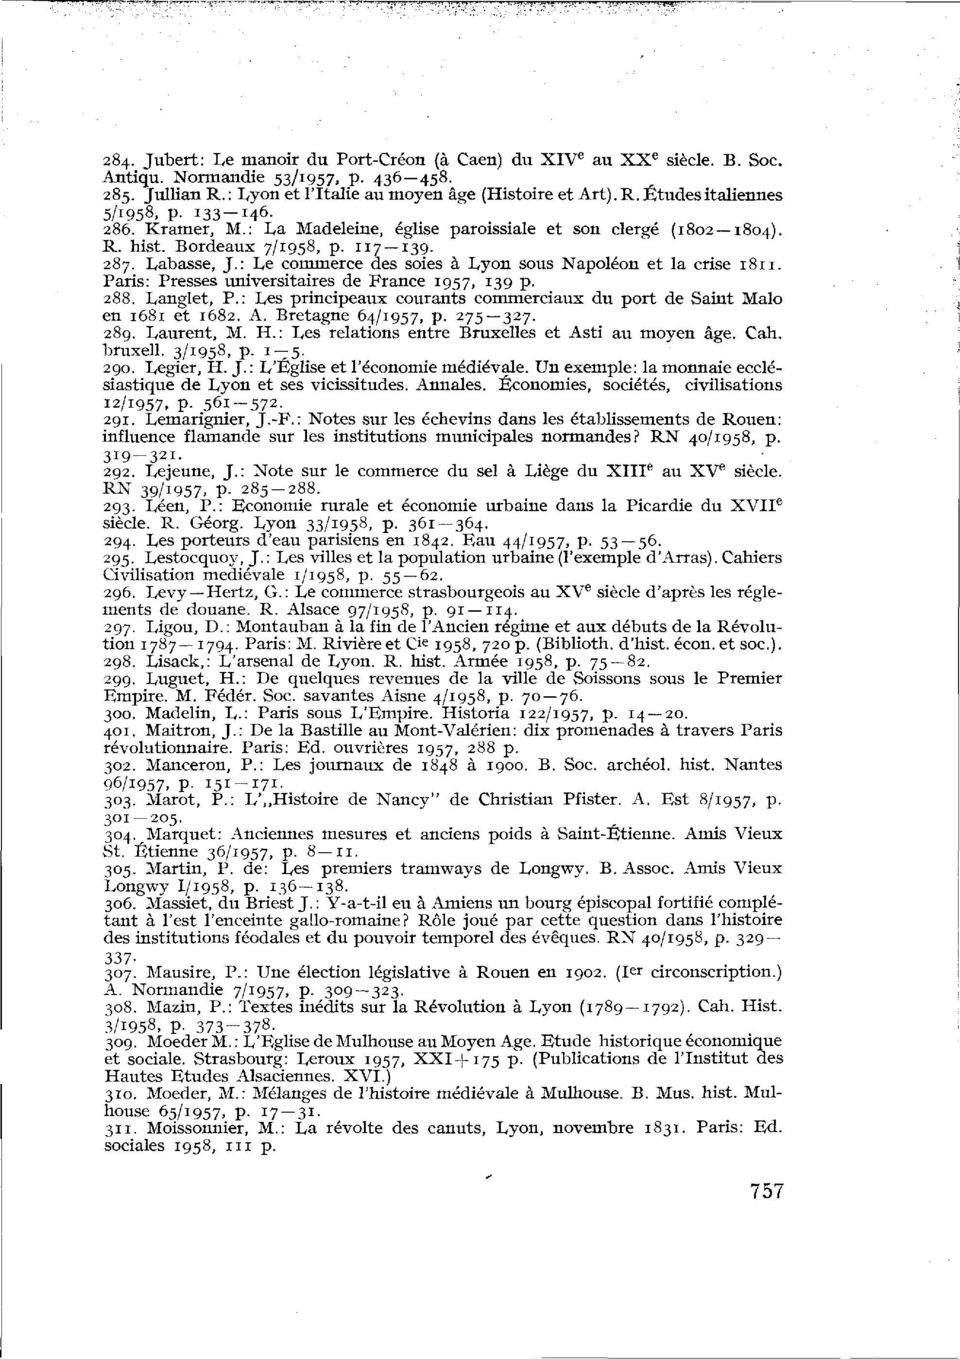 : Le commerce des soies à Lyon sous Napoléon et la crise 1811. Paris: Presses universitaires de France 1957, I 39 P- 288. Langlet, P.